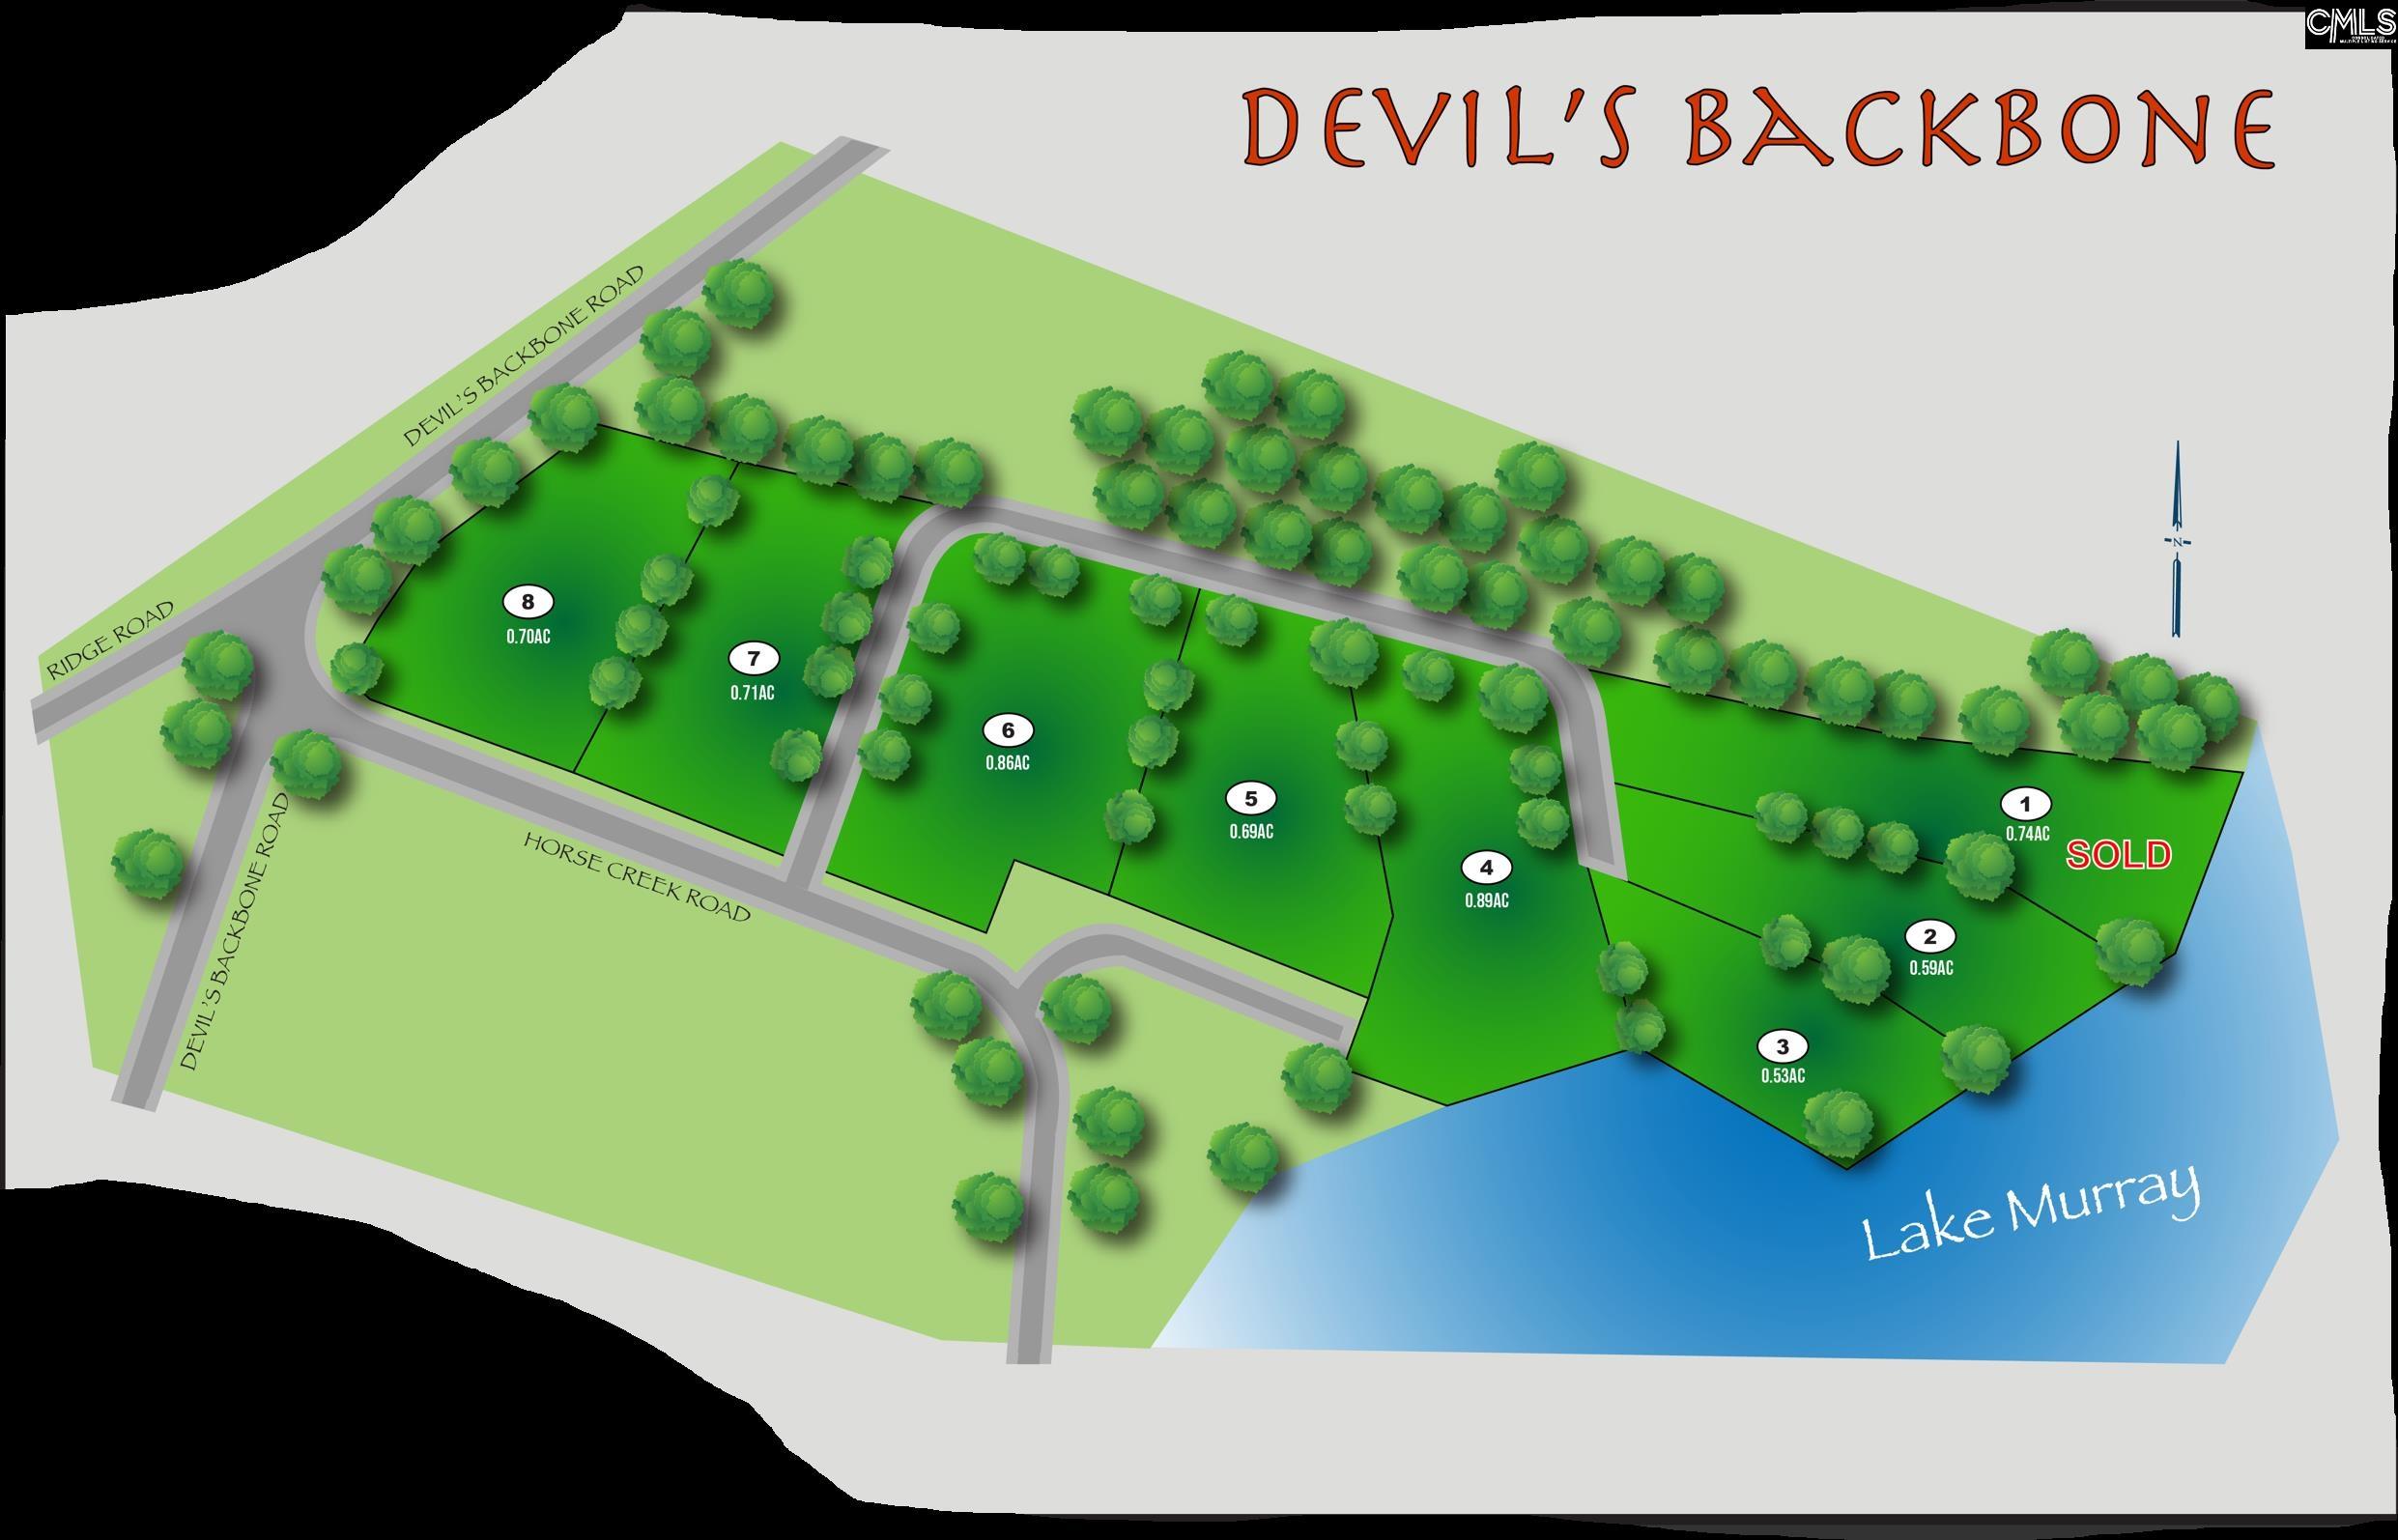 Devils Backbone Road #5, Leesville, South Carolina image 2